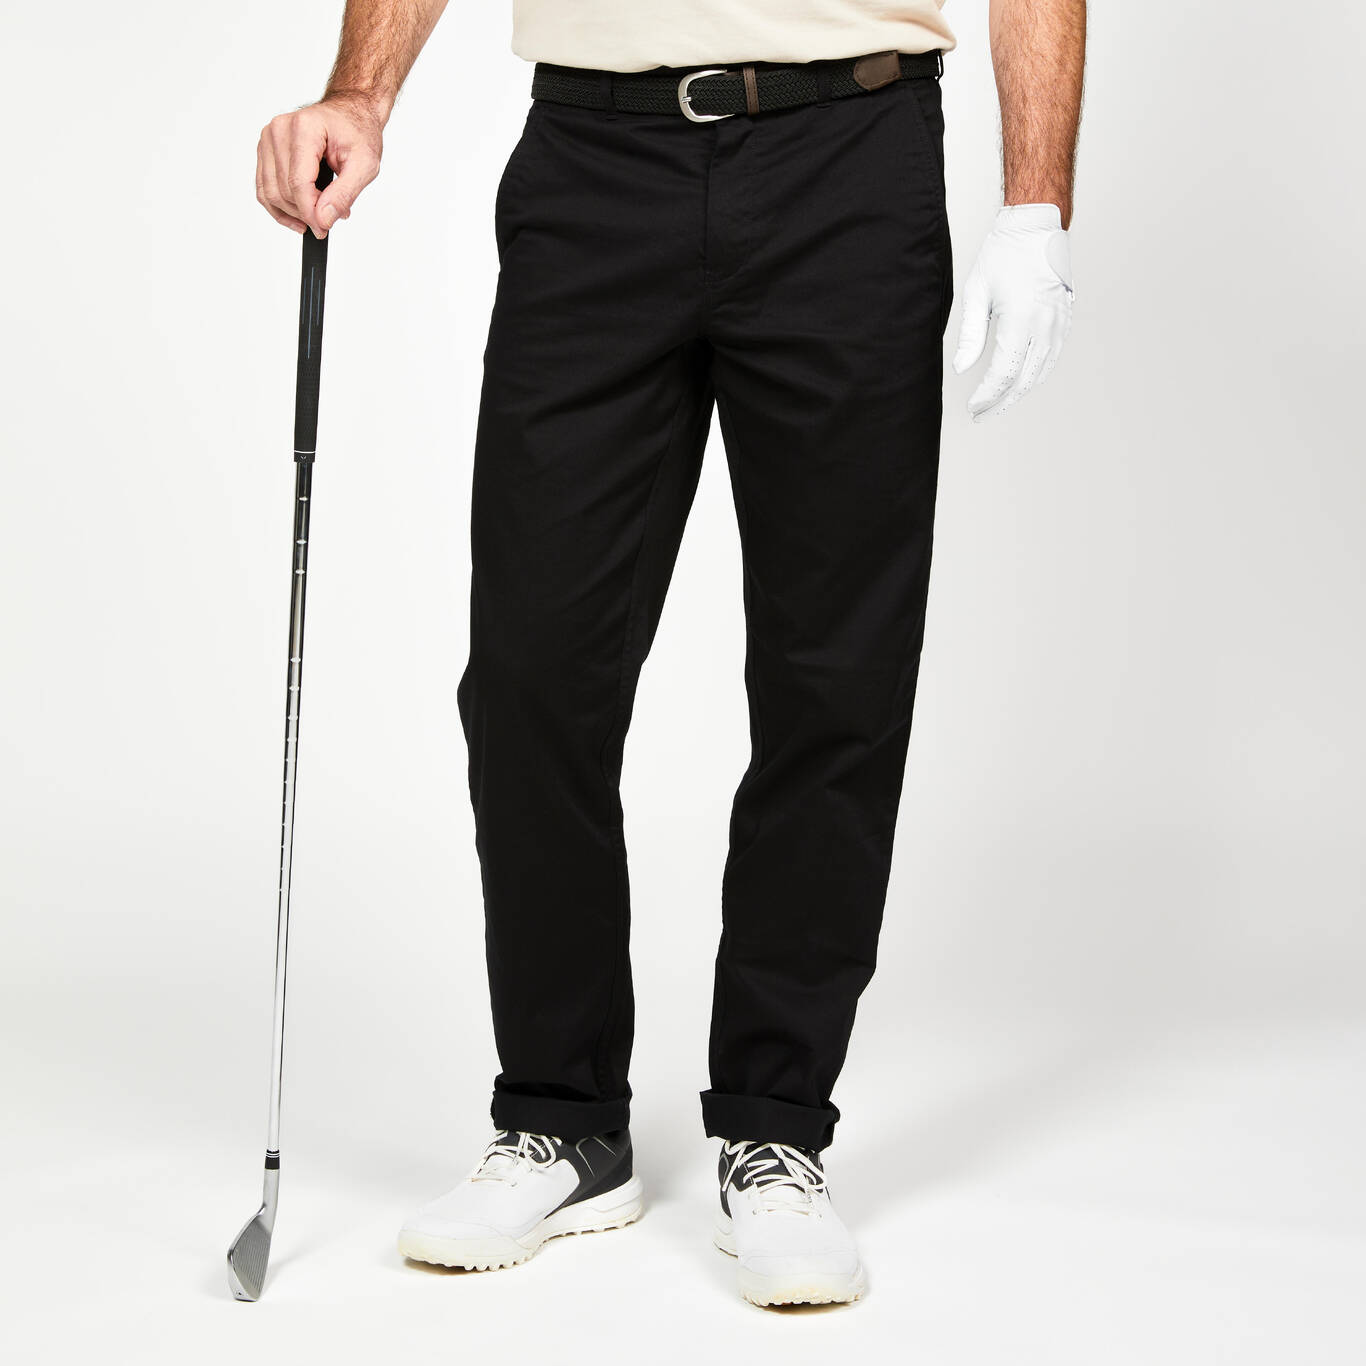 Women's Golf Pants - MW500 Black